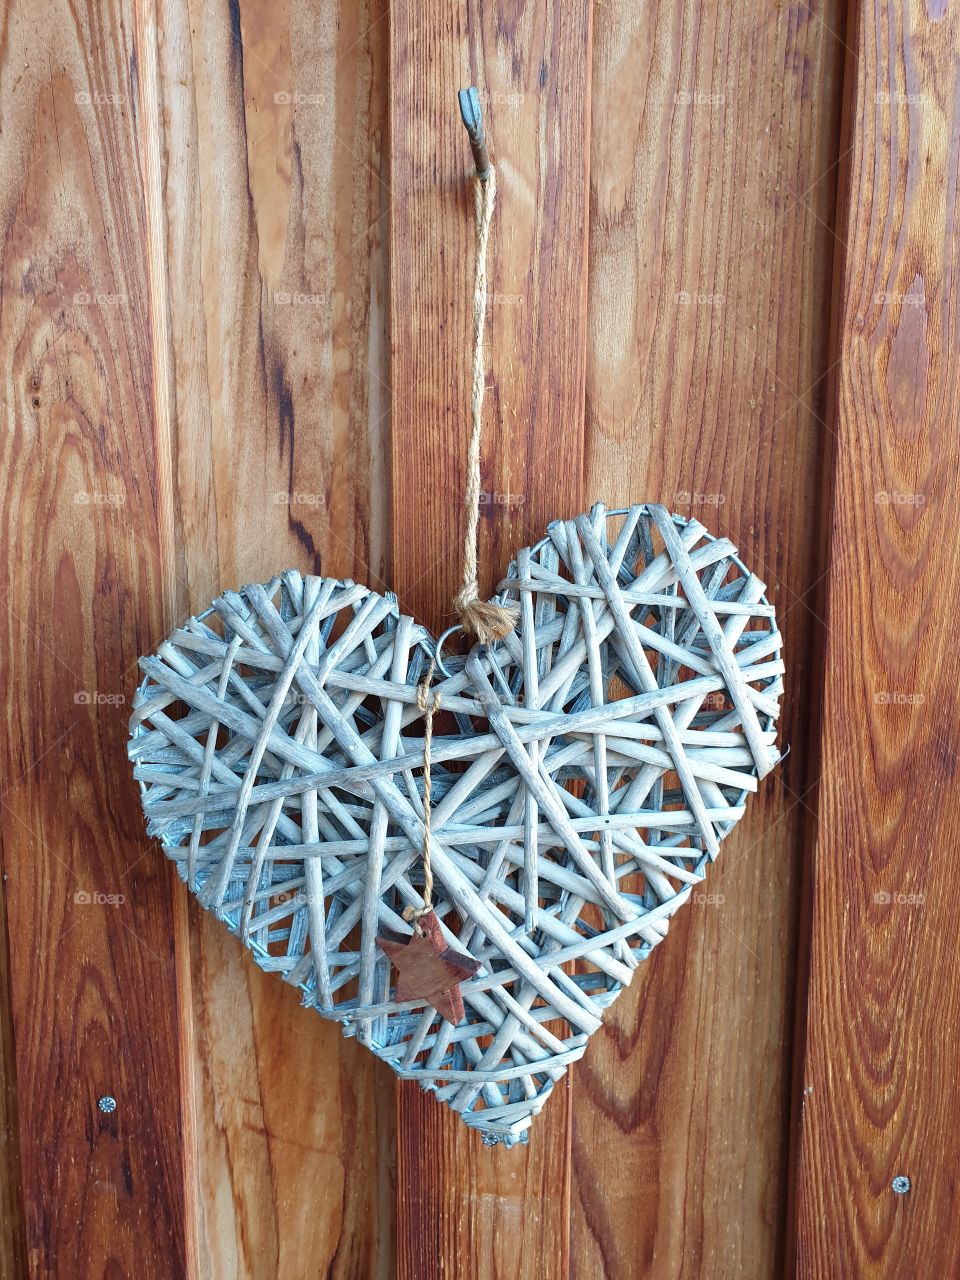 Selbstgemachtes Herz aus Holz.
Kunststück aus Holz selbstgemacht.